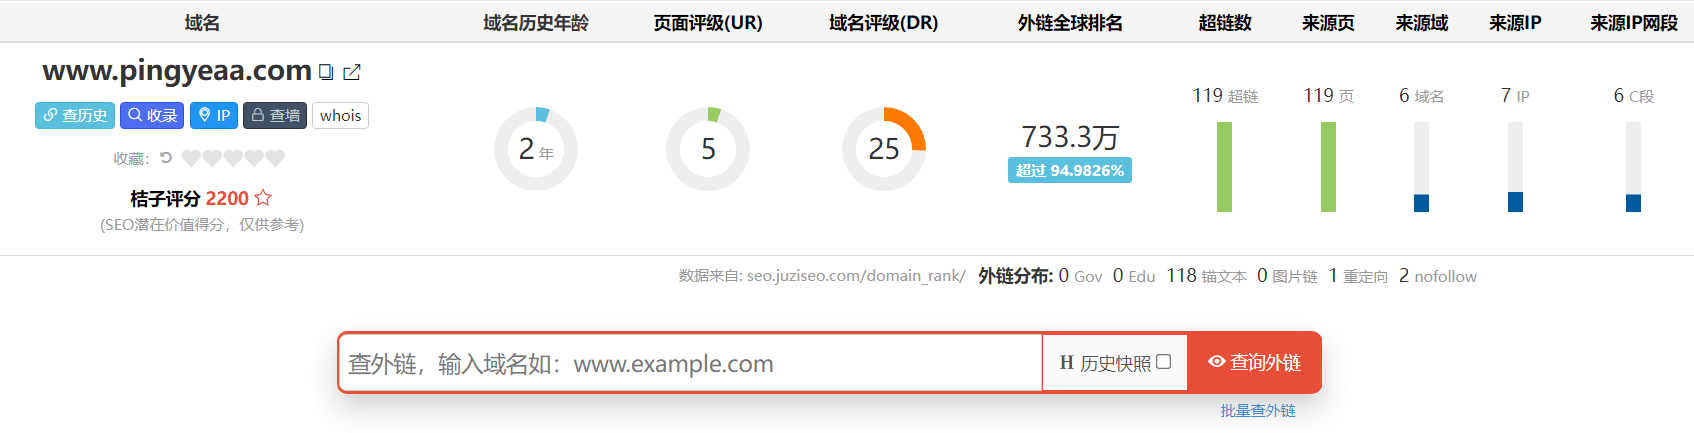 门窗网站seo优化托管_百度seo网站优化_怎么提高网站seo优化关键字排名